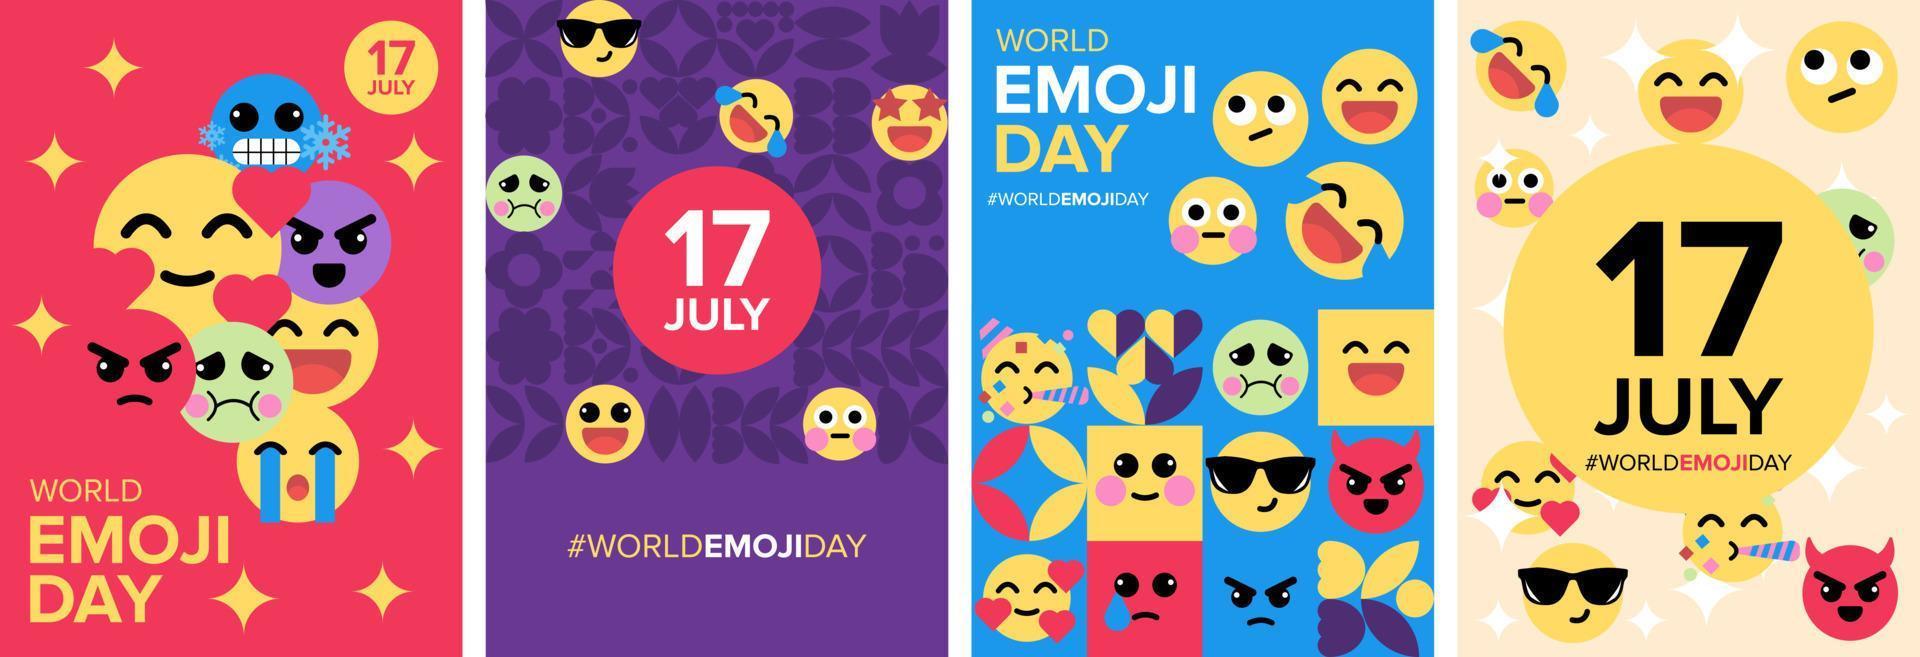 cartaz do dia mundial emoji e modelo de vetor geométrico de cartão de saudação. 17 de julho, conjunto de coleção emoji capa do livro.